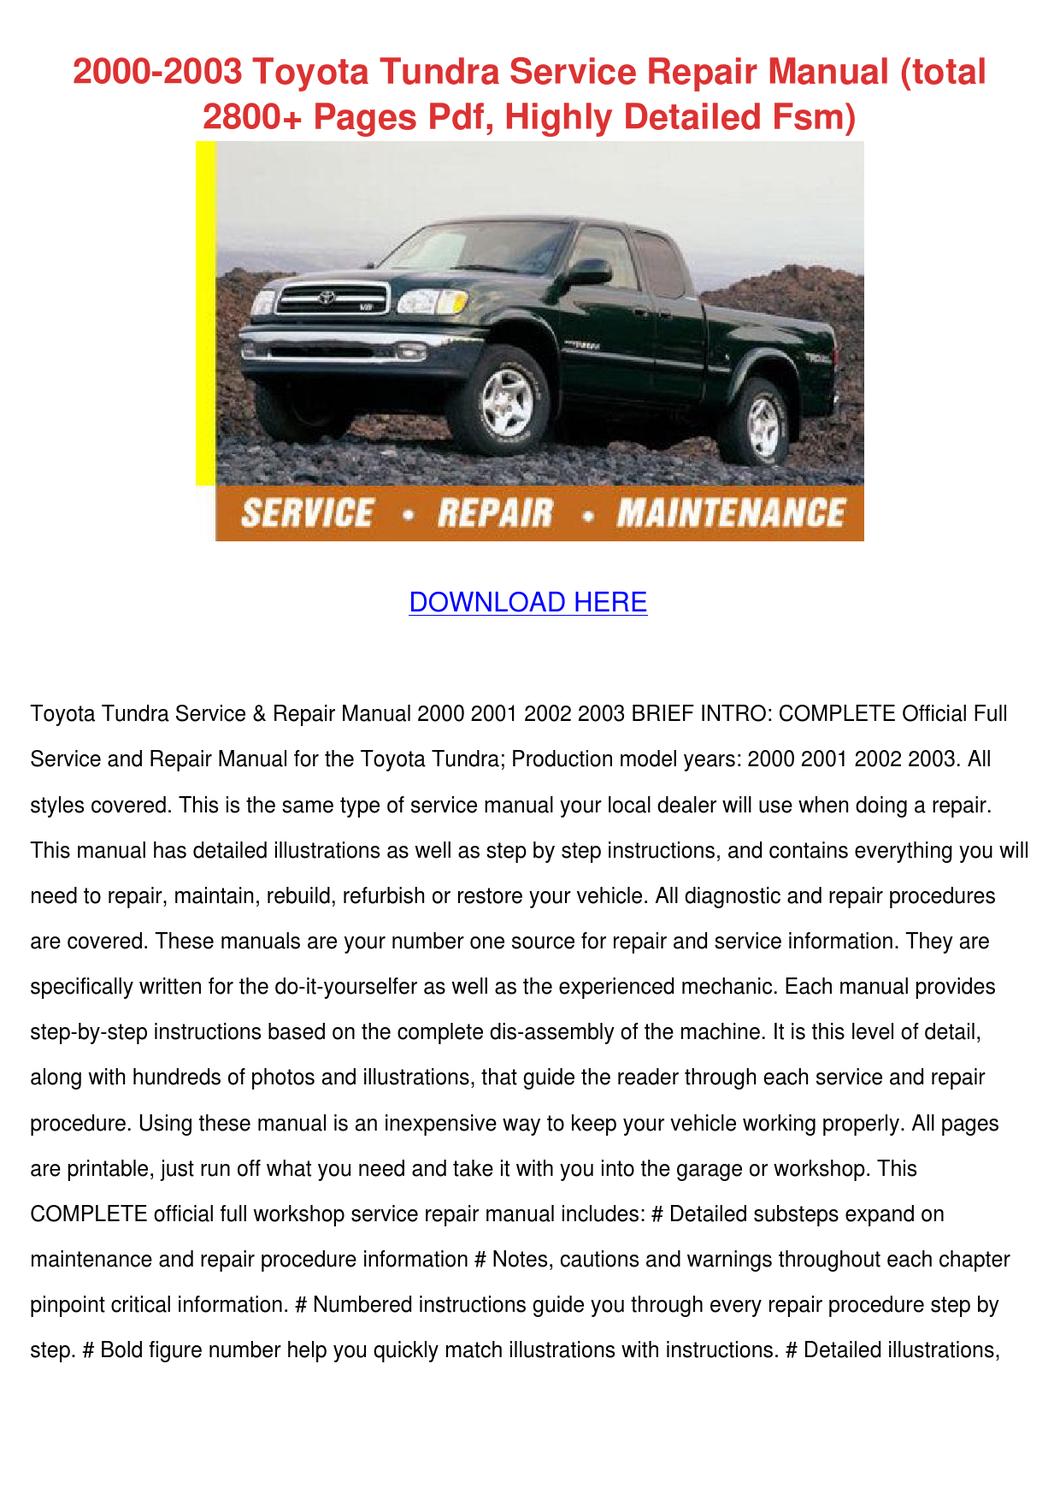 Toyota tundra service manuals